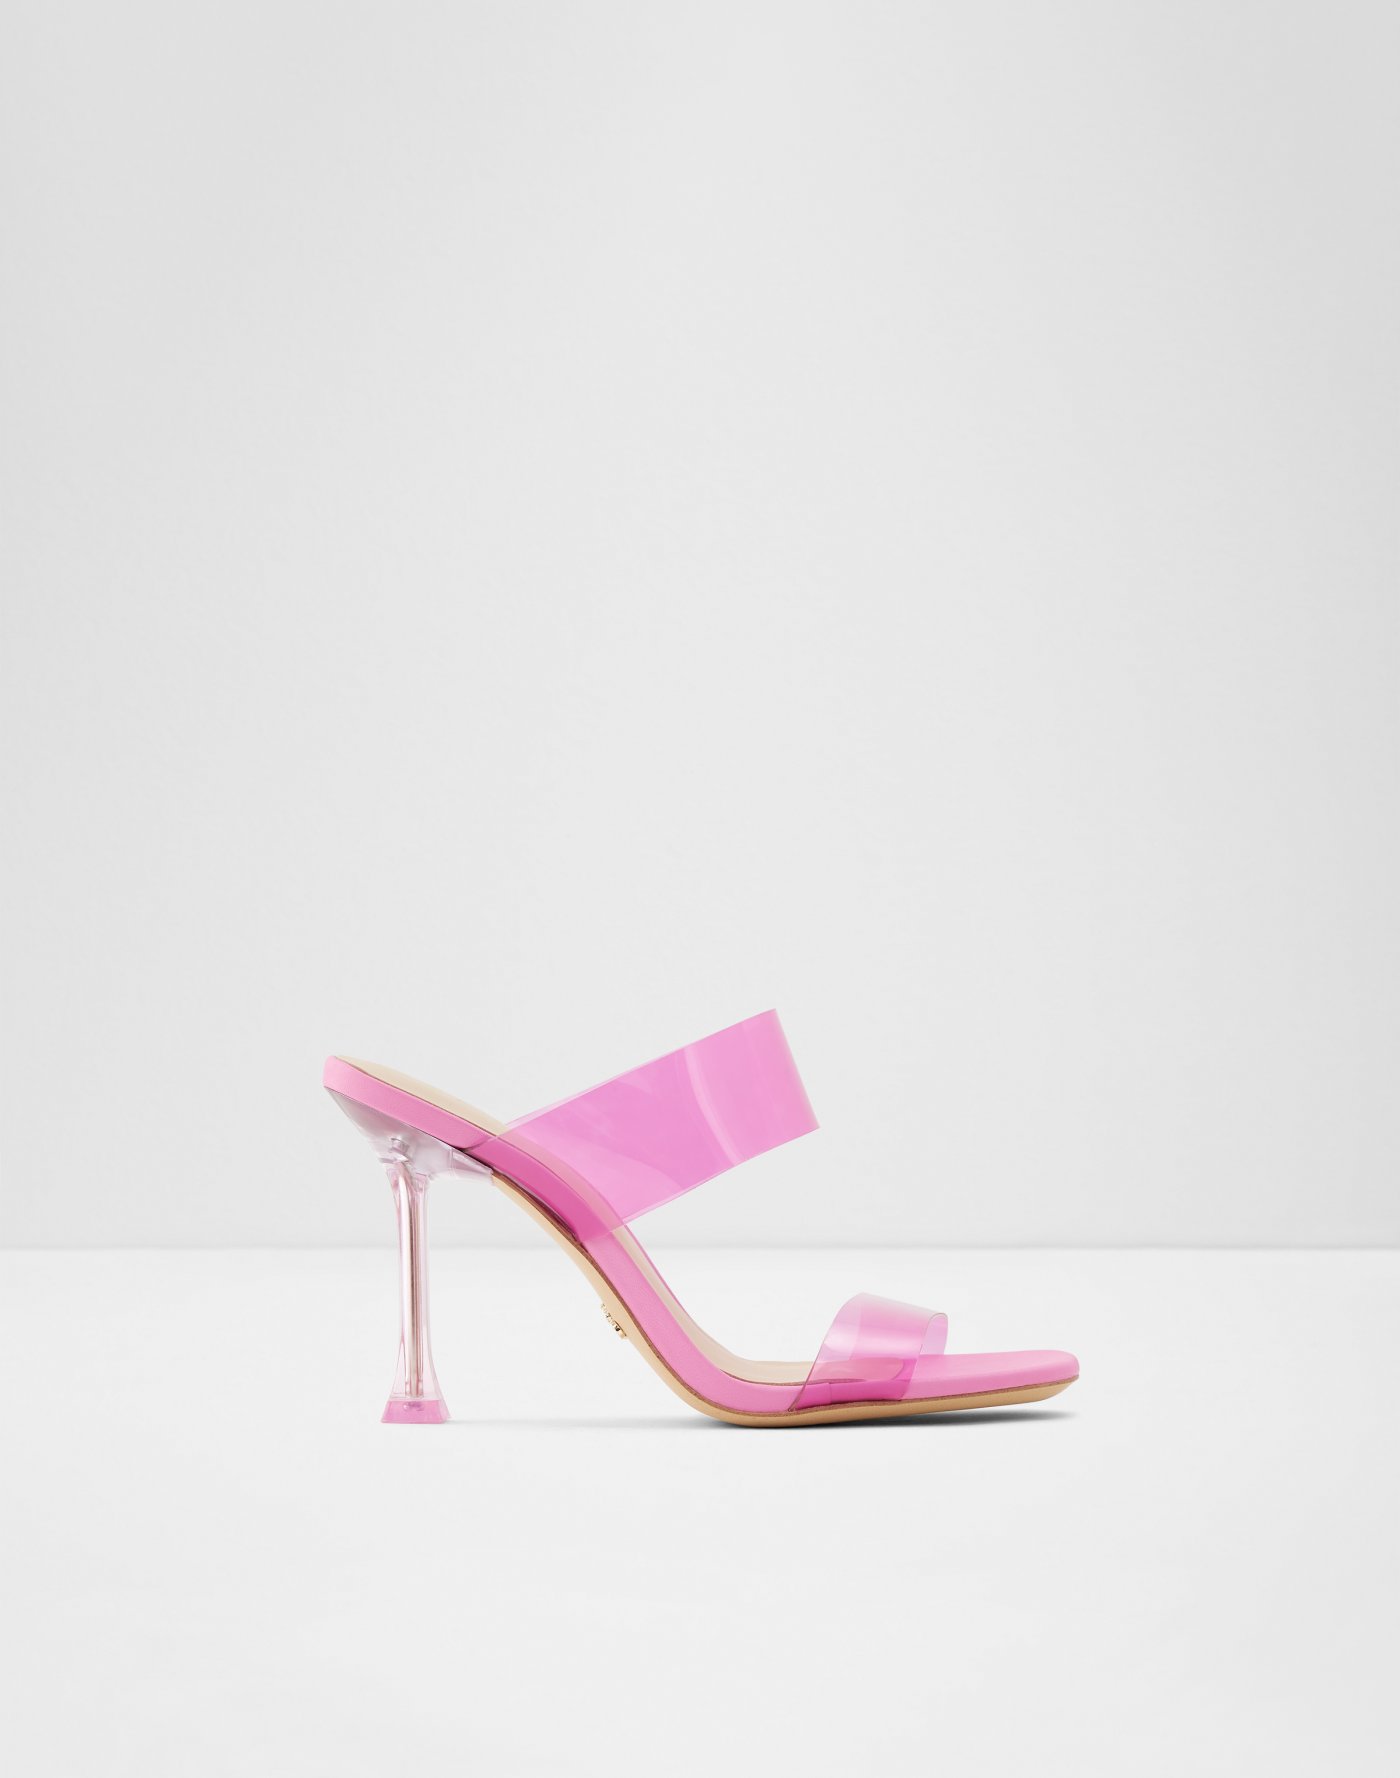 Byen tørre kompliceret aldo scarpe rosa> OFF-65%